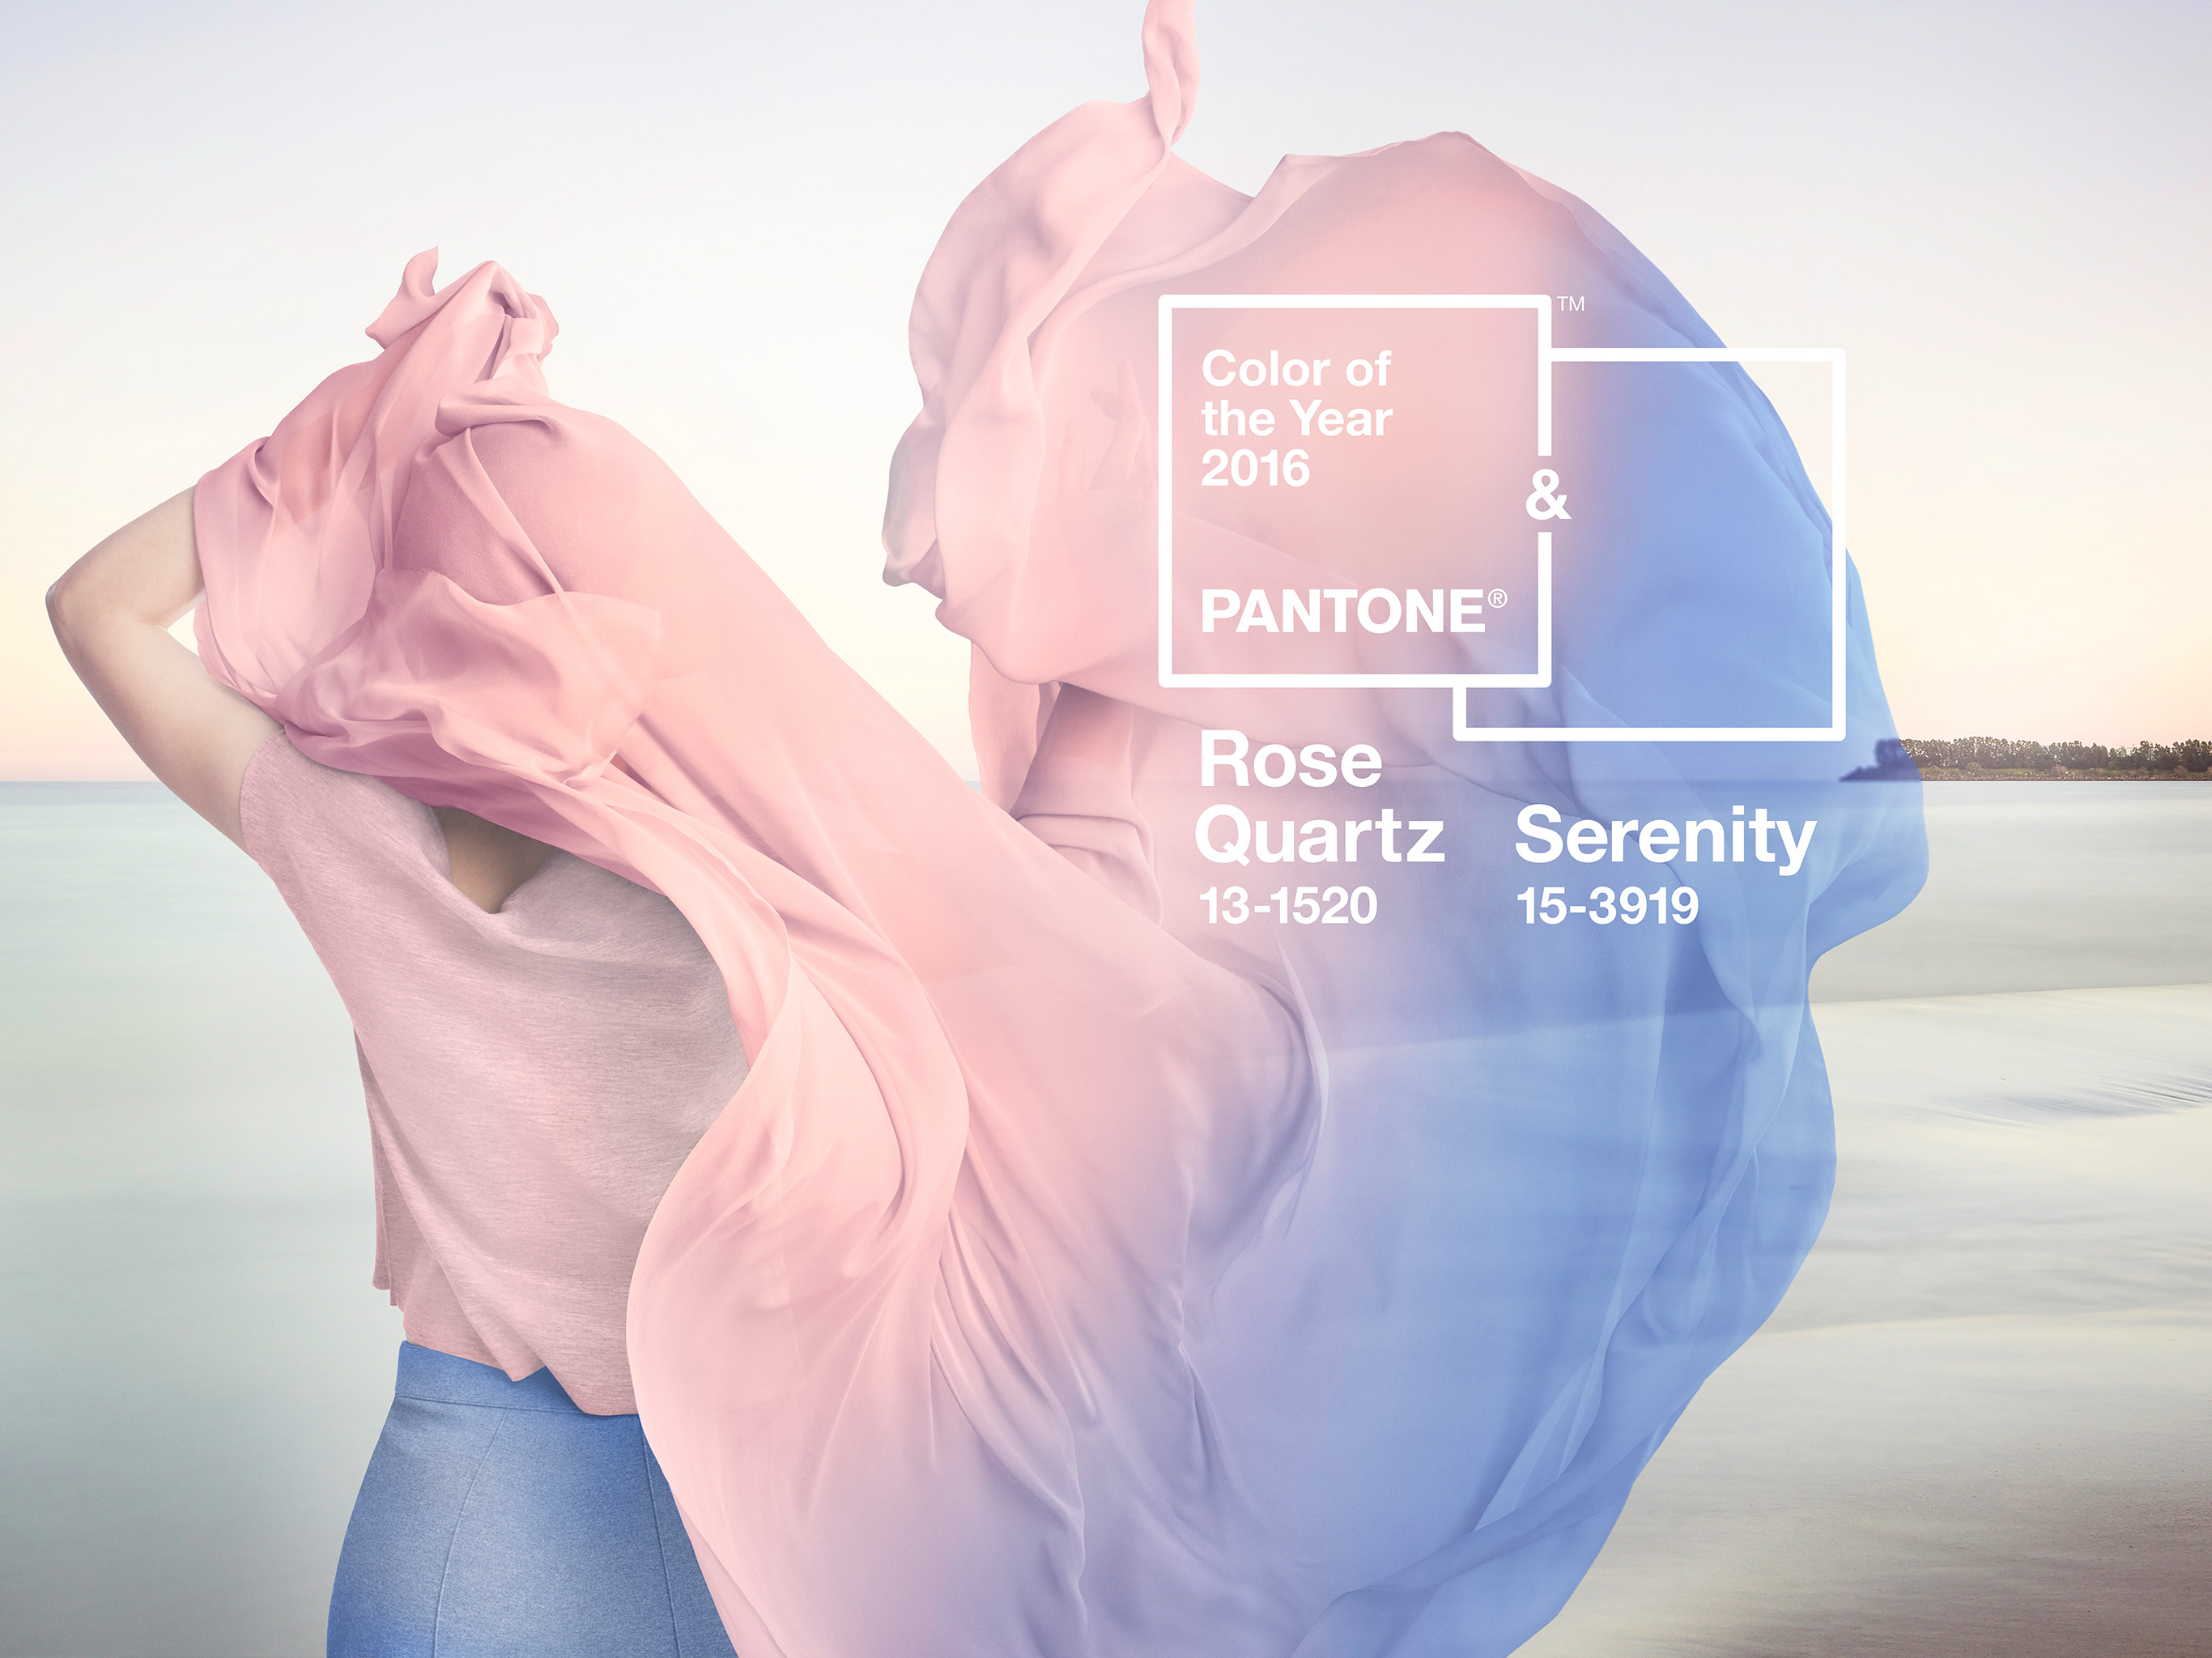 rose quartz serenity wallpaper,product,shoulder,blue,pink,text